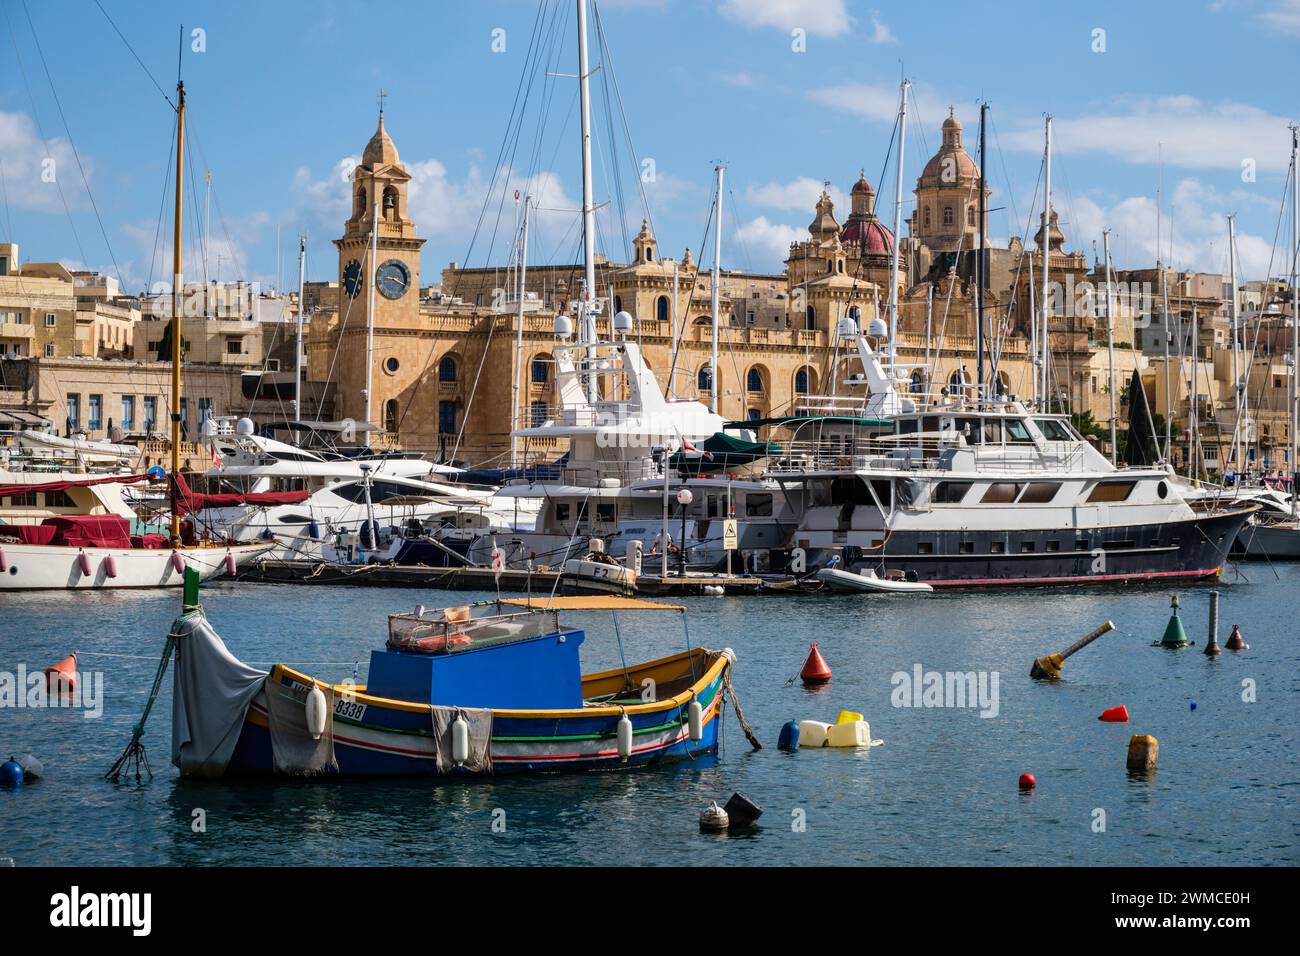 Un luzzu traditionnel contraste avec les yachts de luxe à Vittoriosa Yacht Marina - une vue sur le port depuis Senglea, la Valette, Malte Banque D'Images